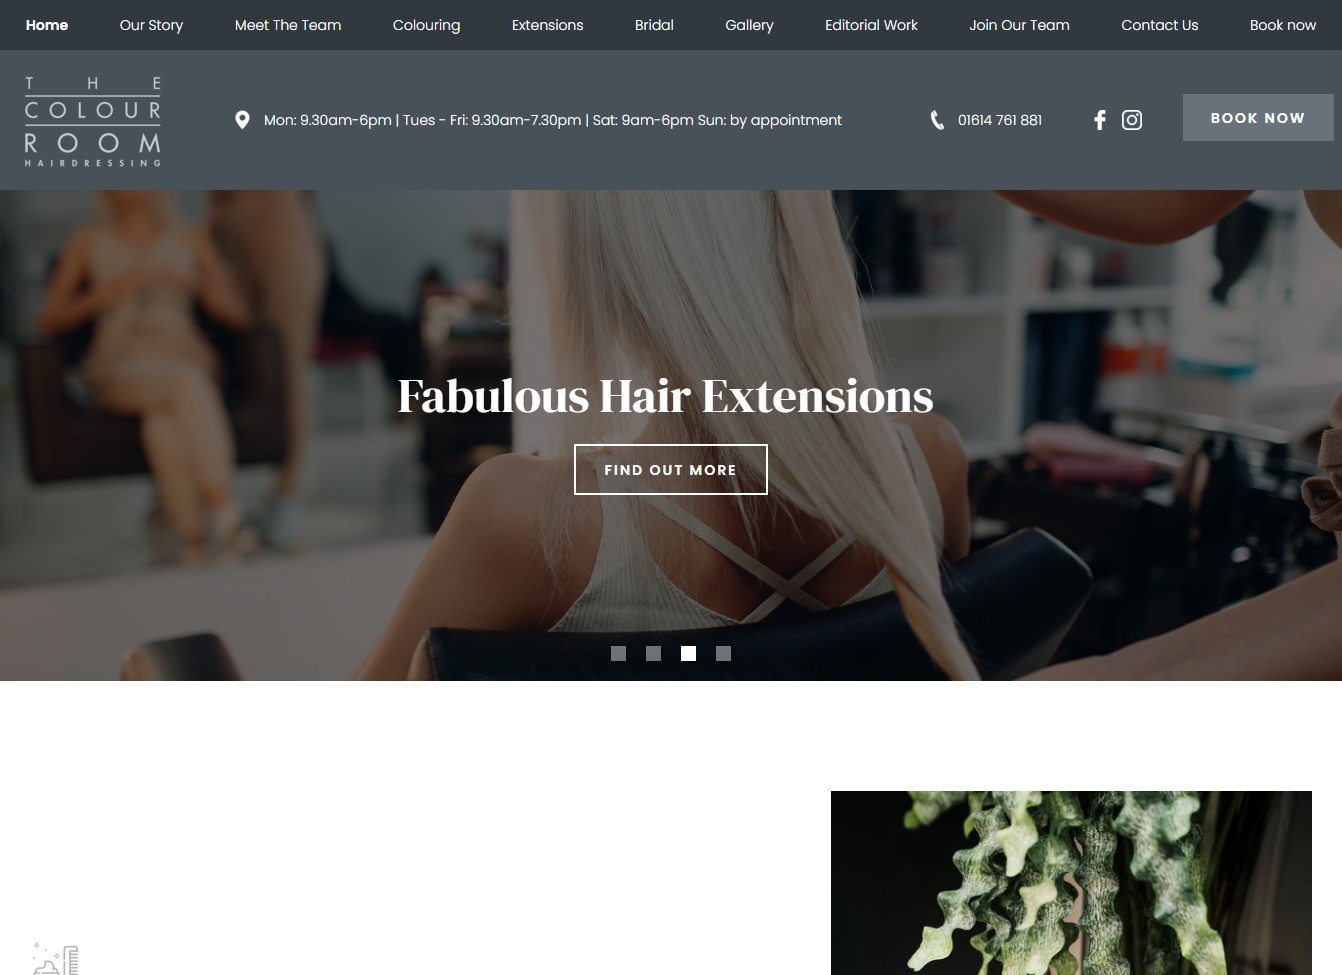 The Colour Room hair salon website